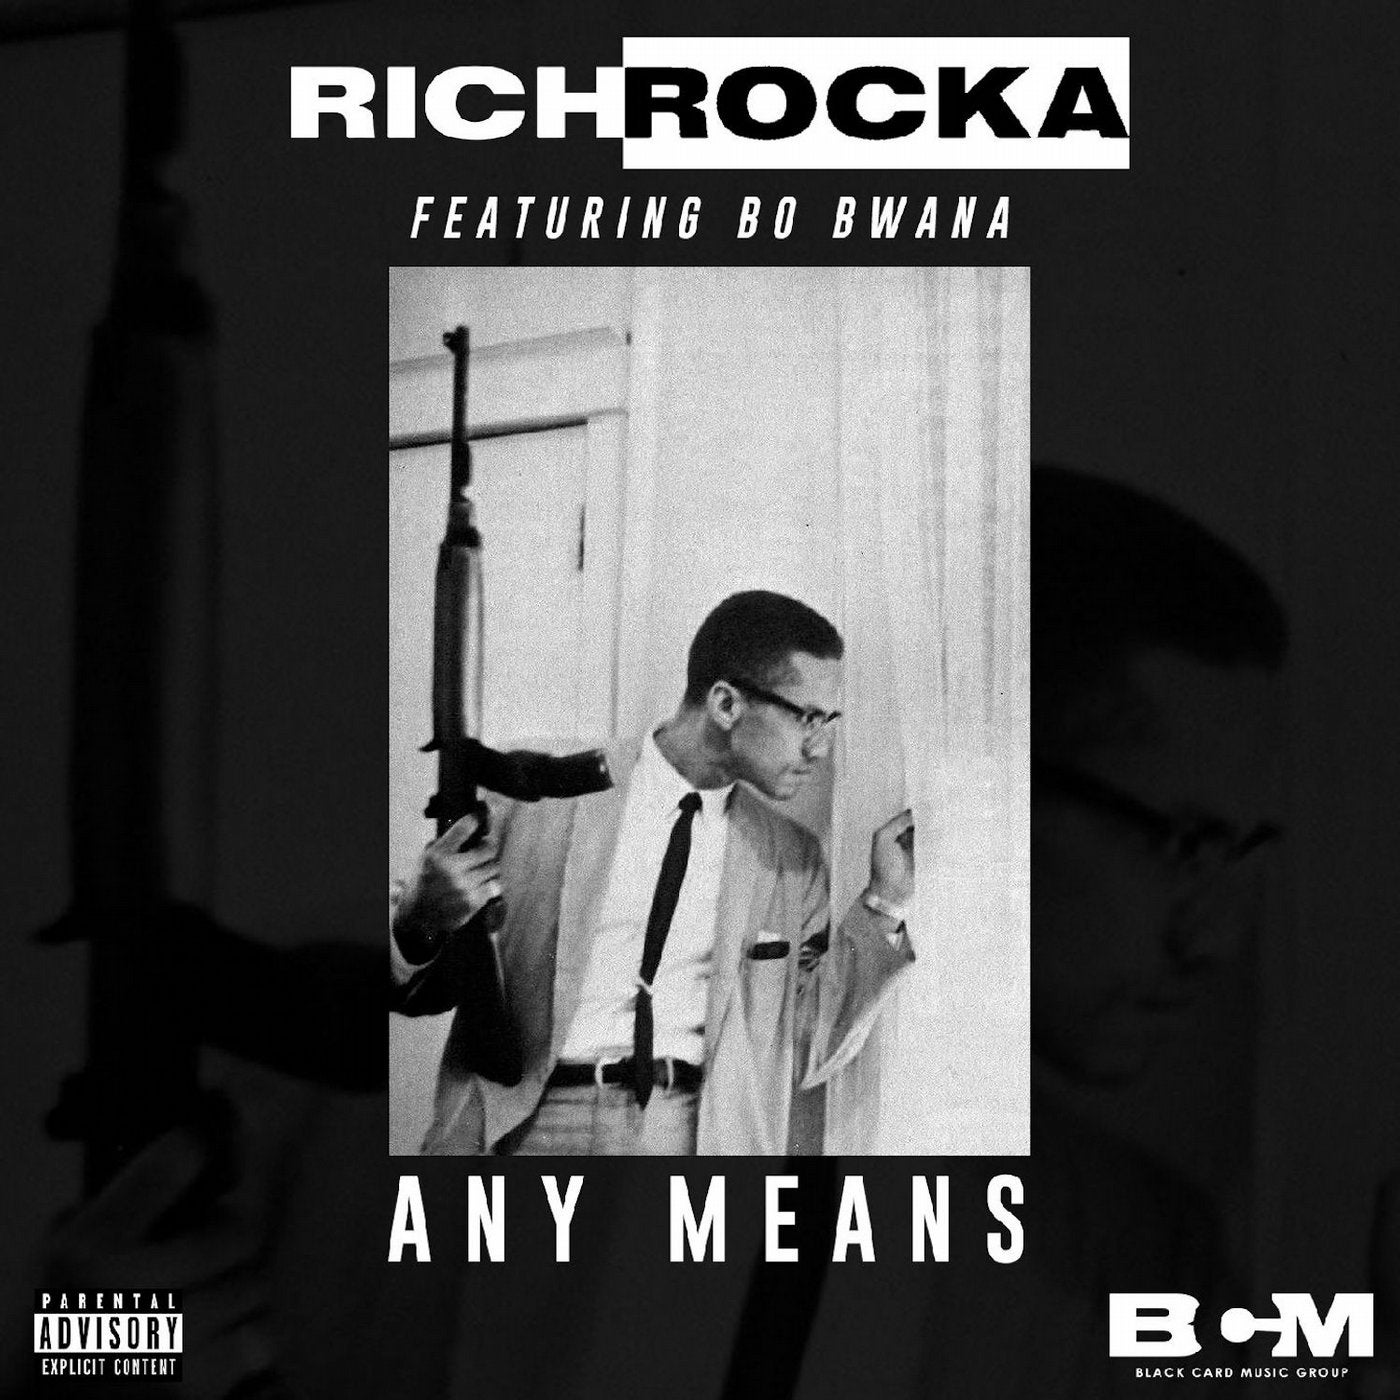 Any Means (feat. Bo Bwana)